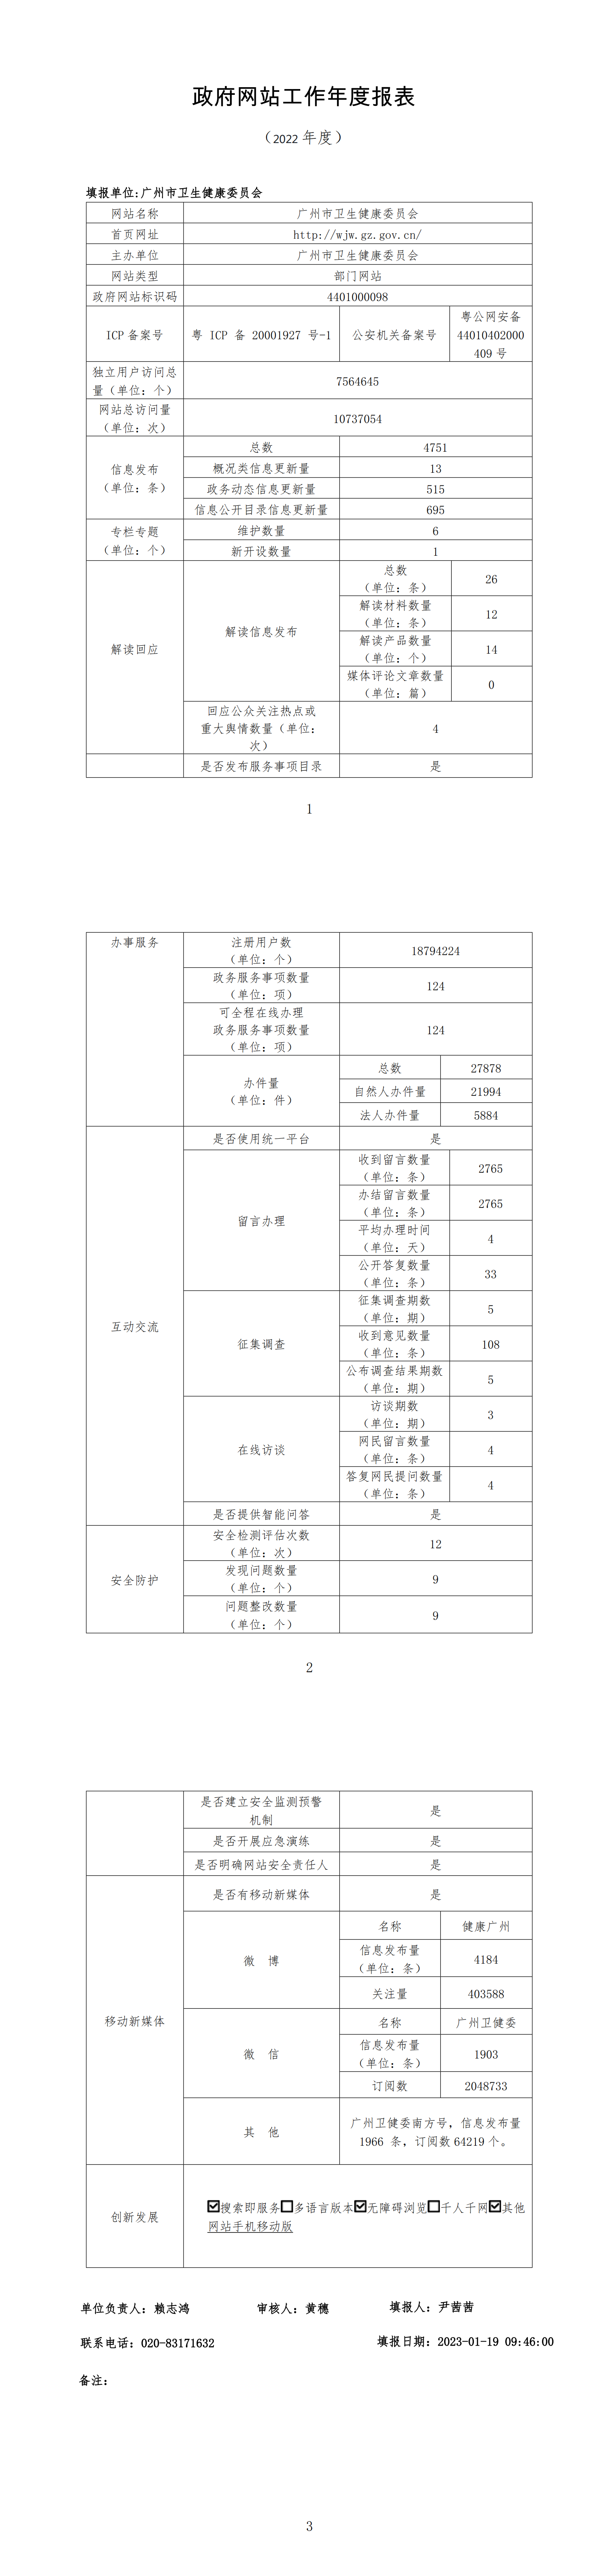 广州市卫生健康委员会2022年政府网站工作年度报表 (2)_00(1).png